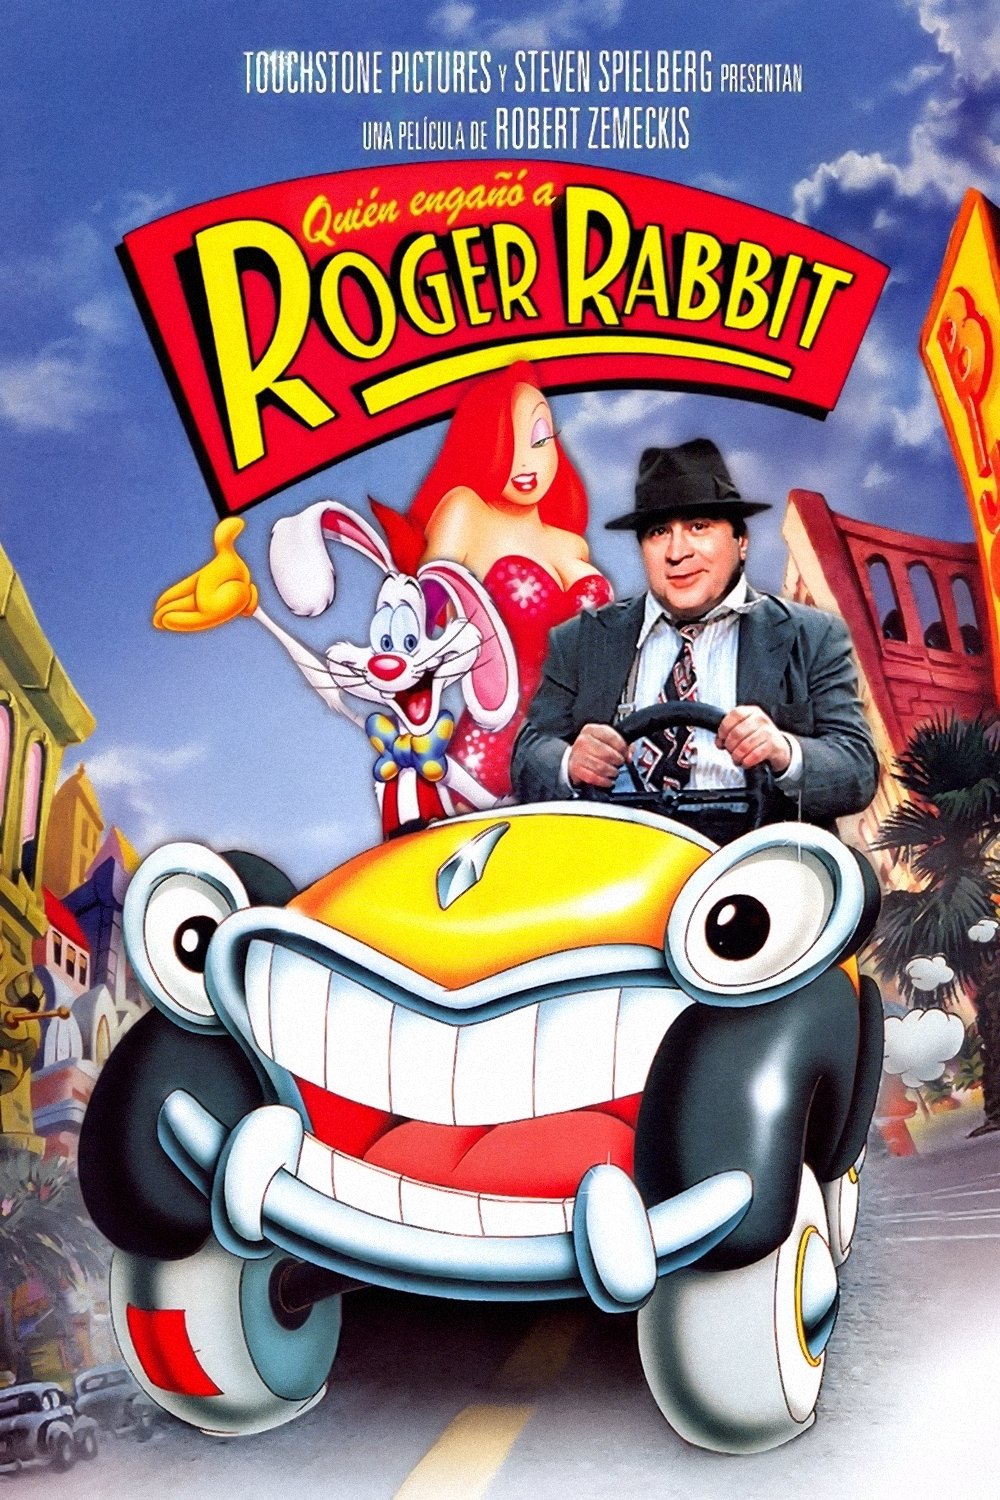 Diez películas - Página 16 Quien-engano-roger-rabbit